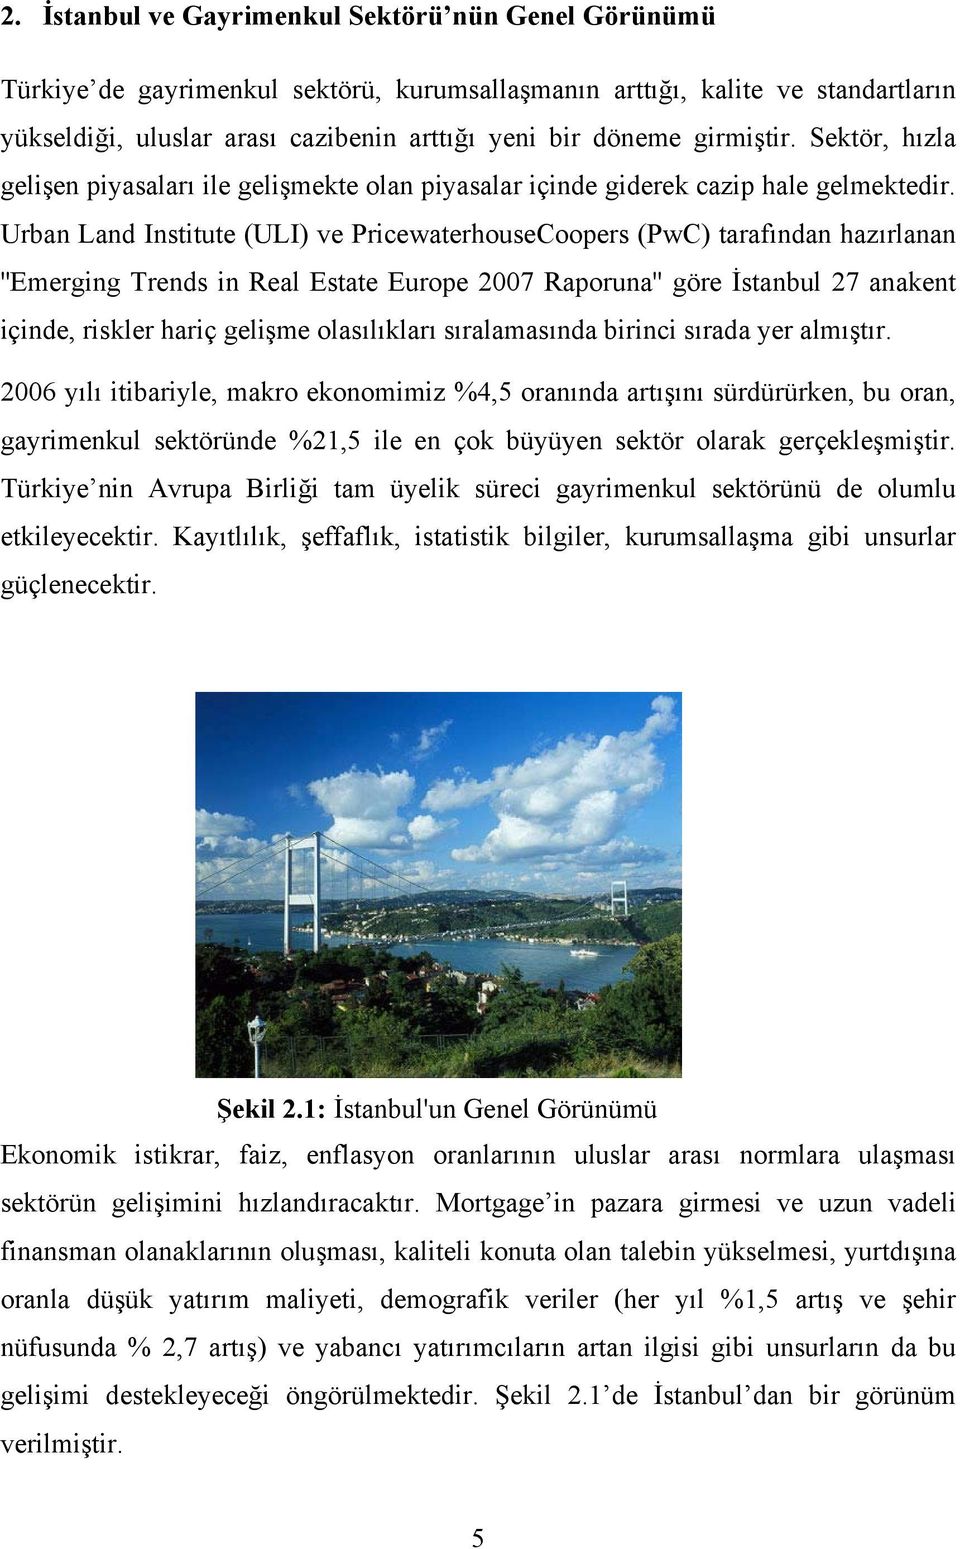 Urban Land Institute (ULI) ve PricewaterhouseCoopers (PwC) tarafından hazırlanan ''Emerging Trends in Real Estate Europe 2007 Raporuna'' göre İstanbul 27 anakent içinde, riskler hariç gelişme